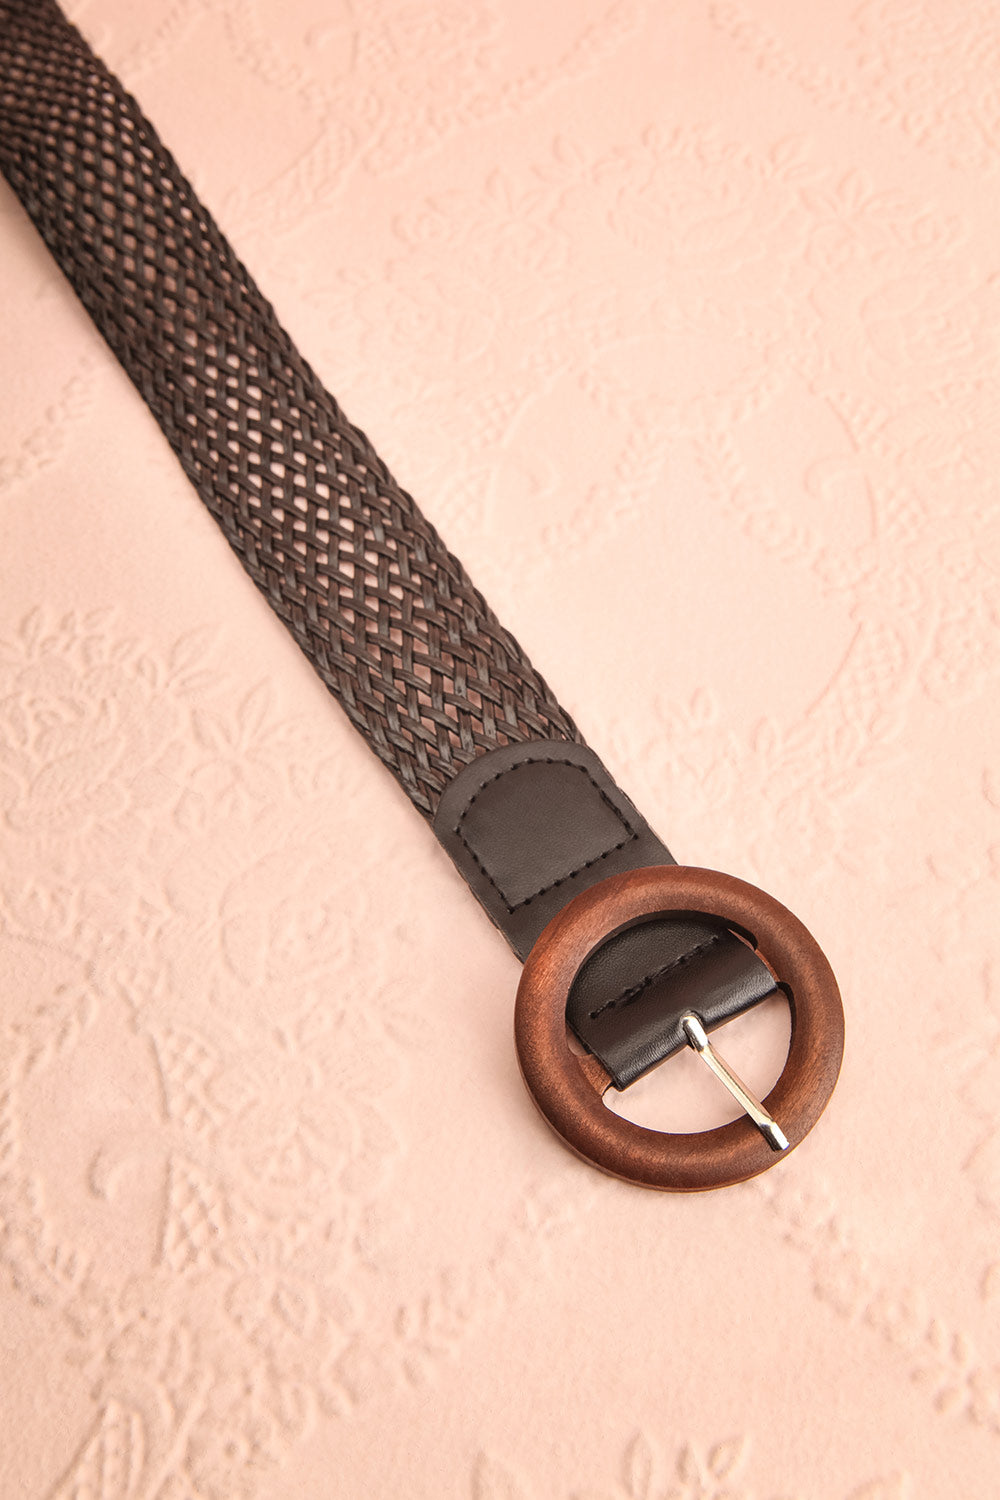 Gaperon Black Faux-Leather Woven Belt | Boutique 1861 flat view